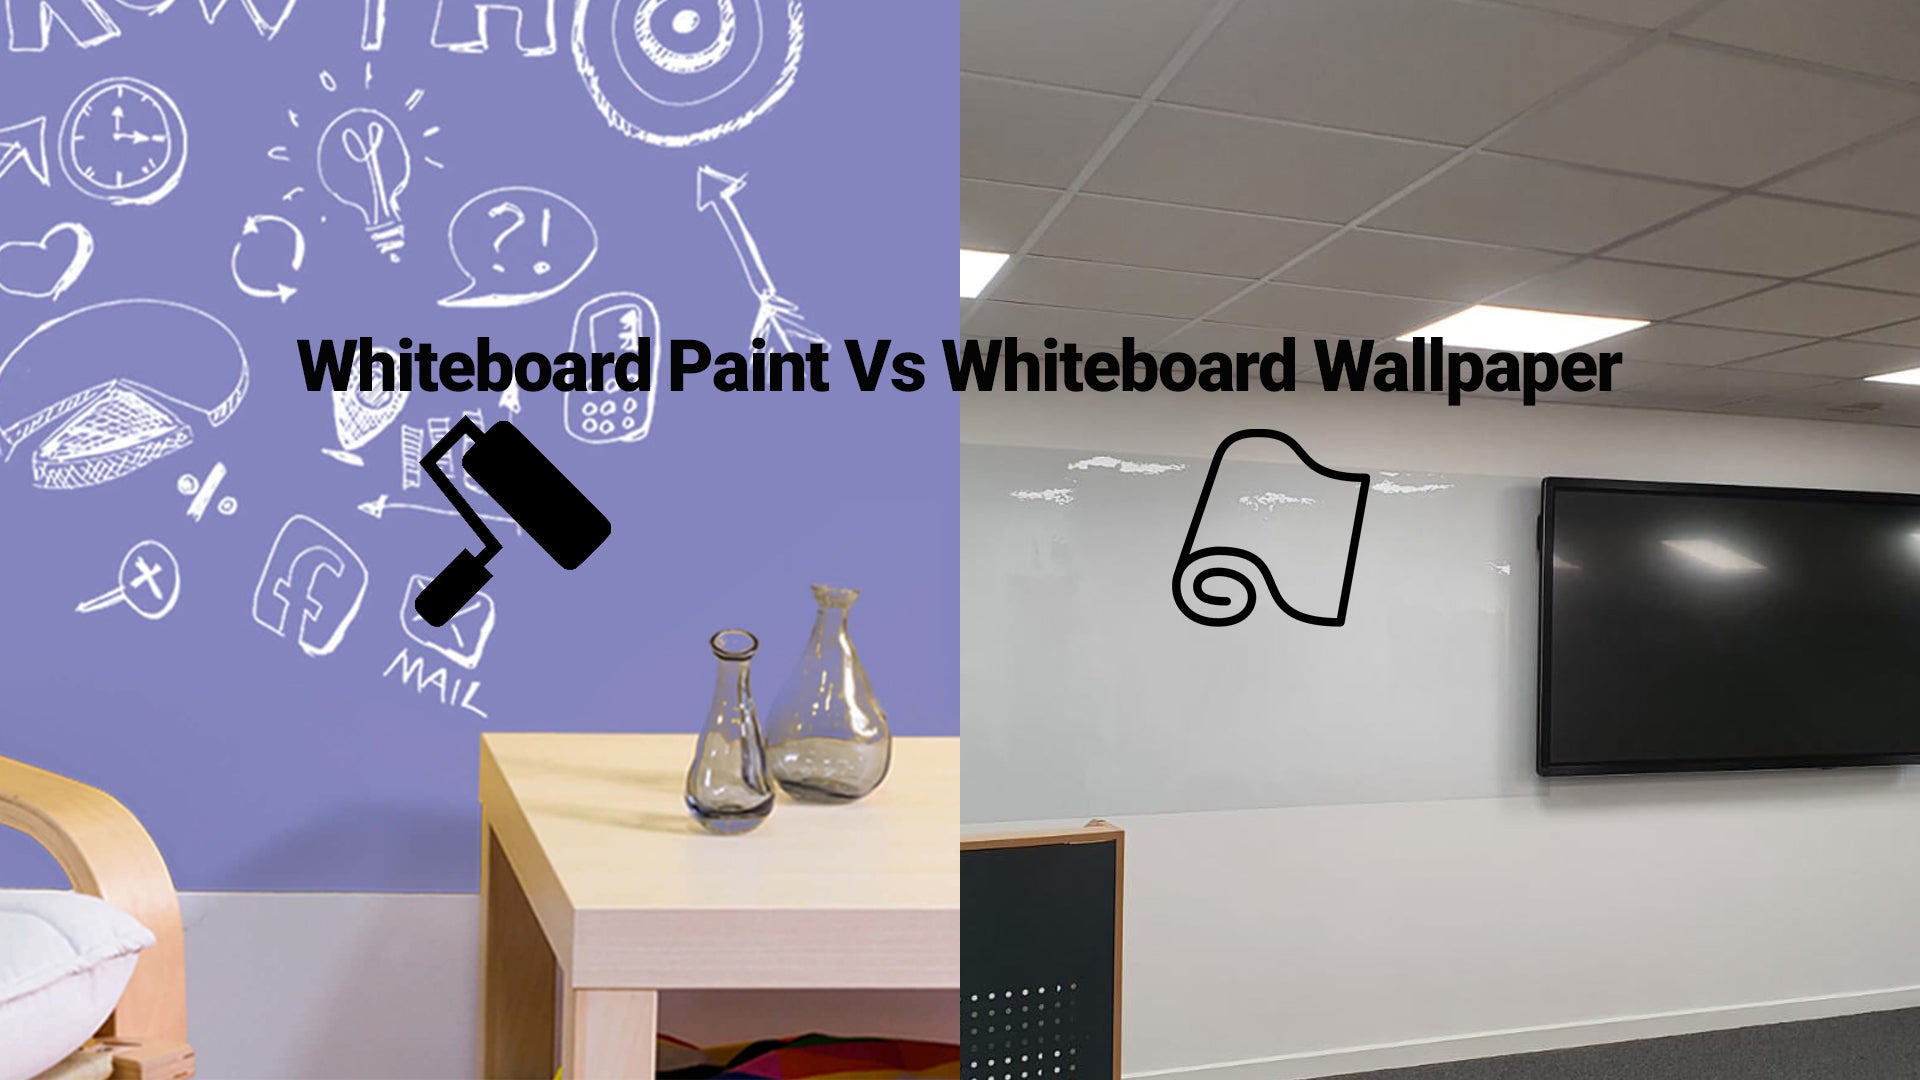 Whiteboard Wallpaper